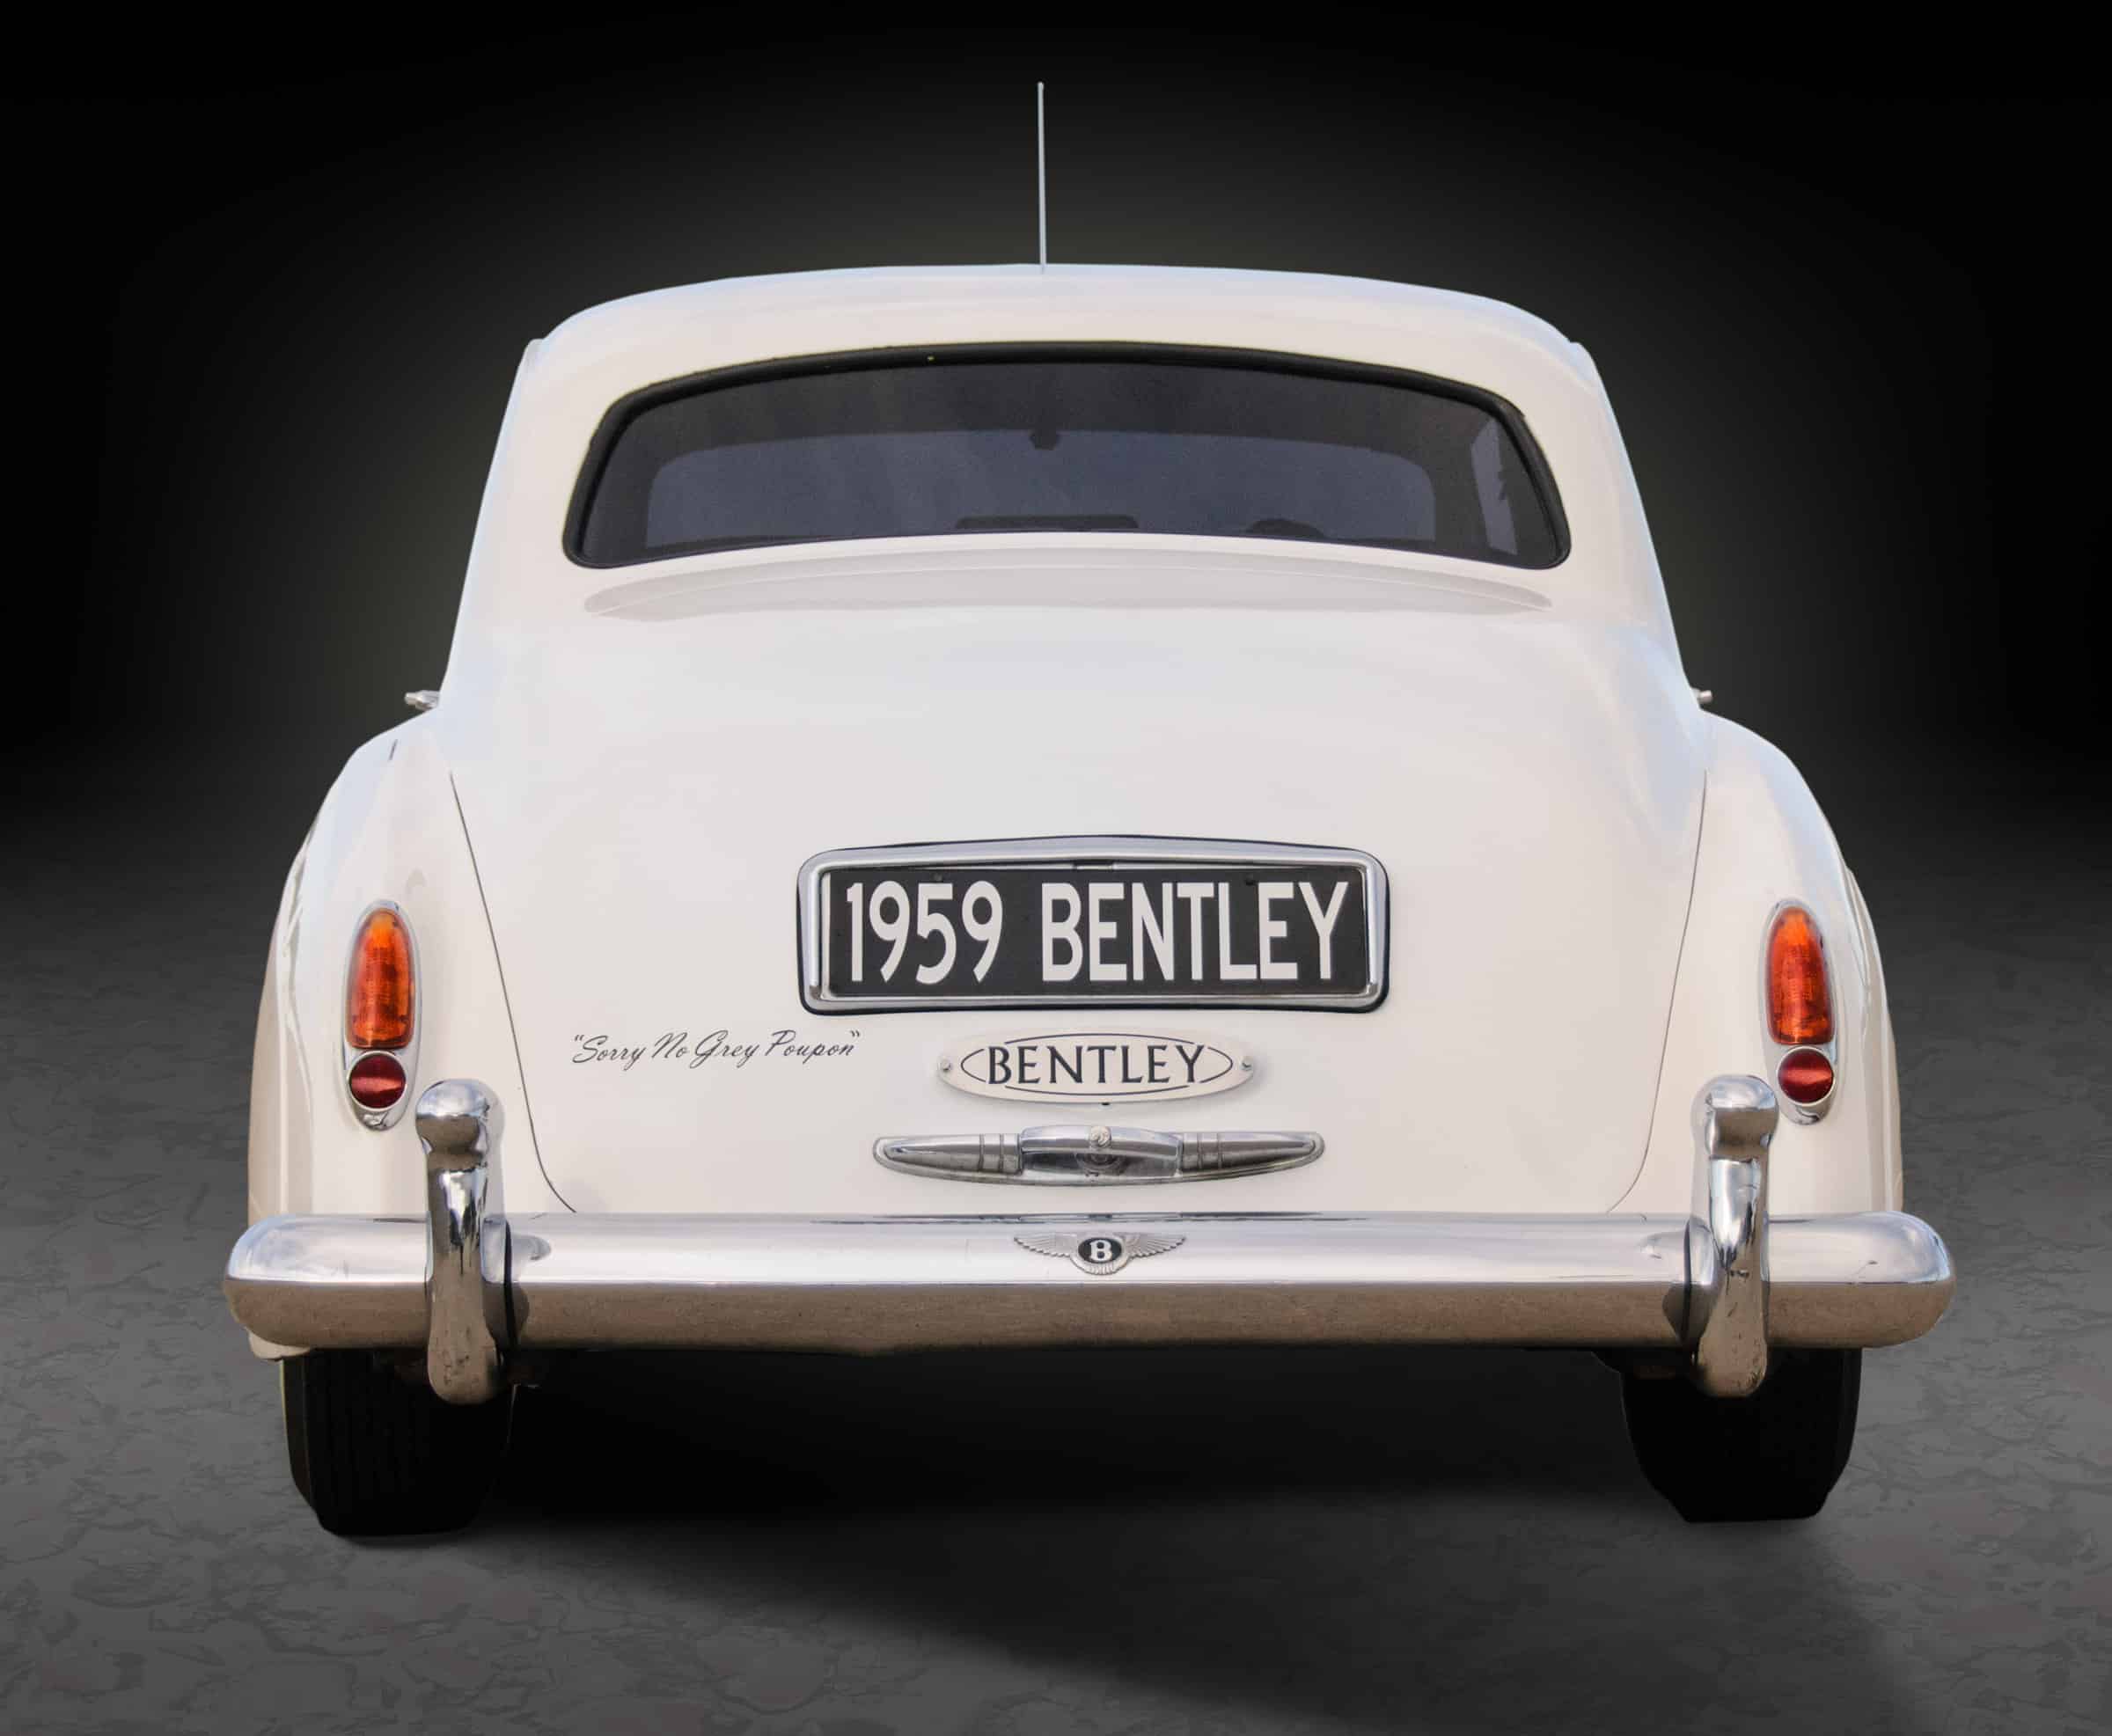 1959 Bentley S1 rear view.